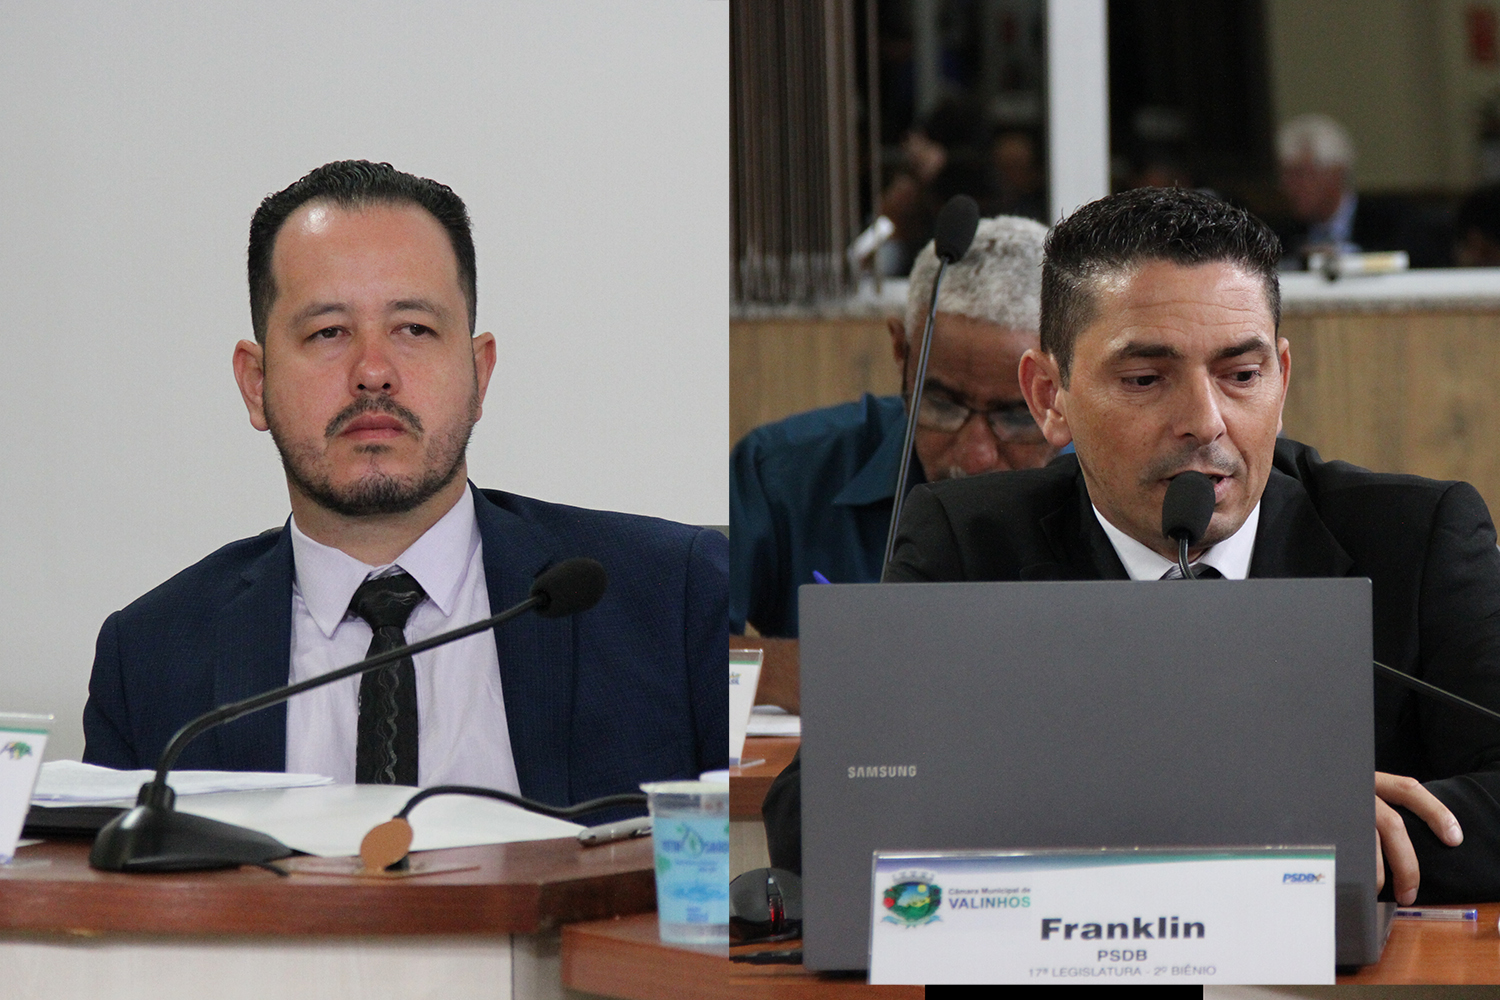 #PraCegoVer: foto-montagem mostra o vereador Alexandre Japa à esquerda e o vereador Franklin à direita. Ambos estão discursando durante a sessão.